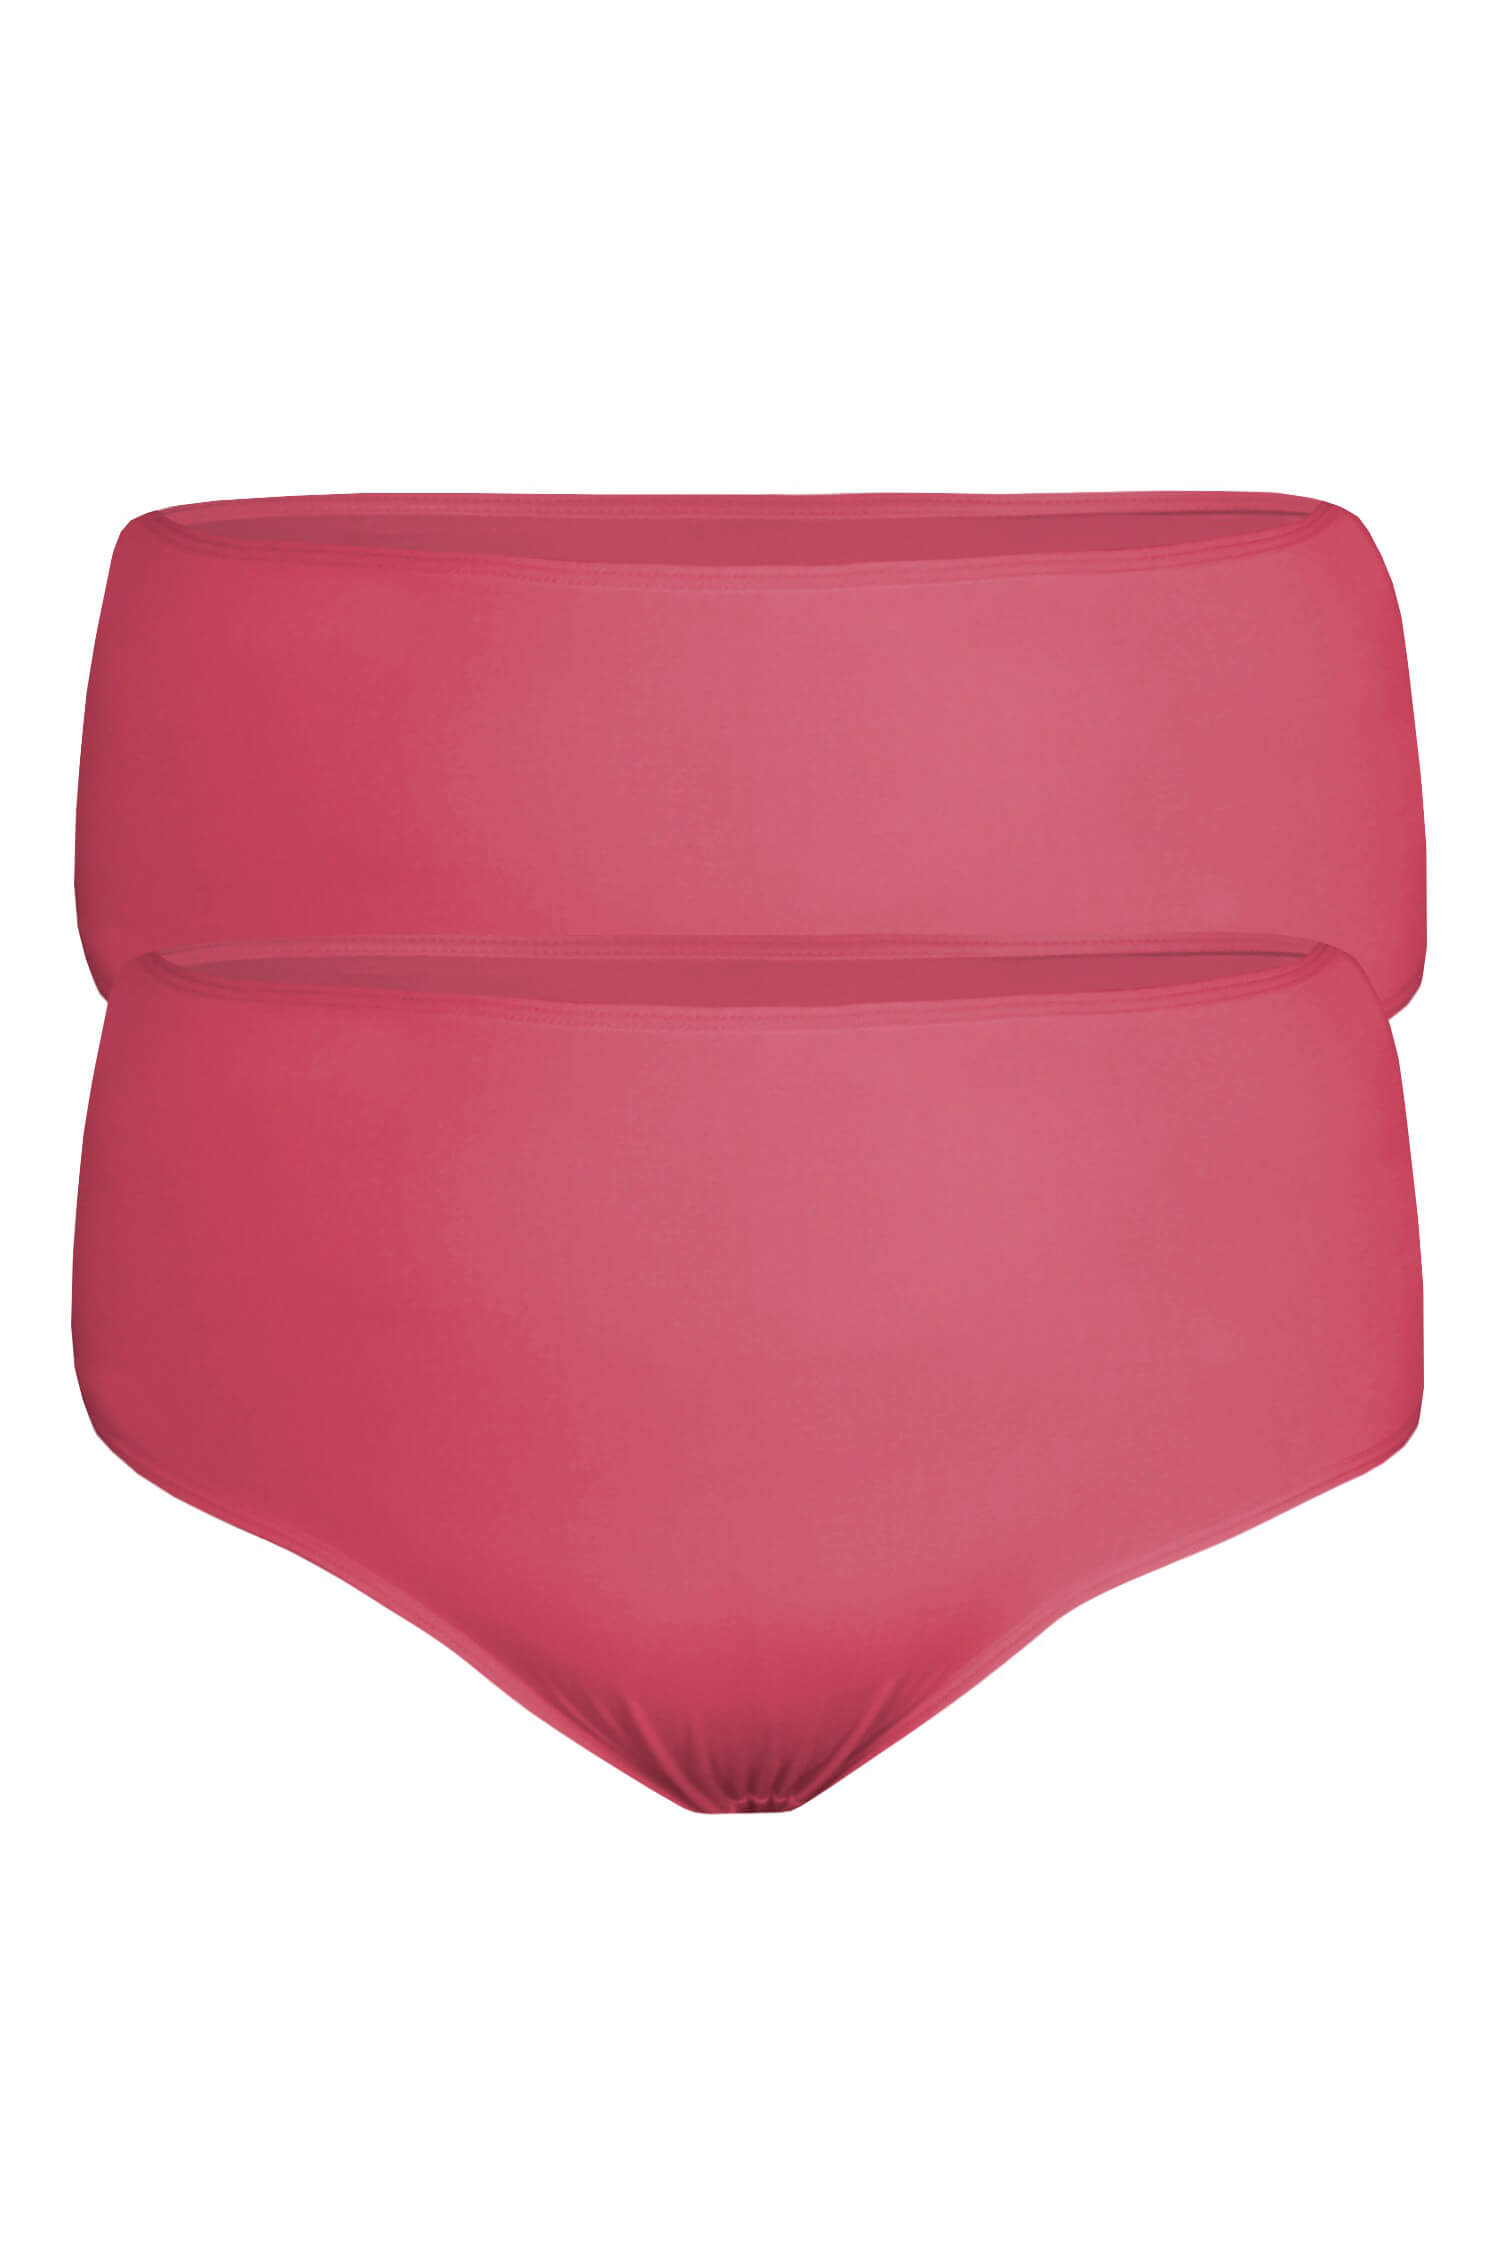 Hana - velké pohodlné kalhotky RM-1711 - 2bal 4XL růžová